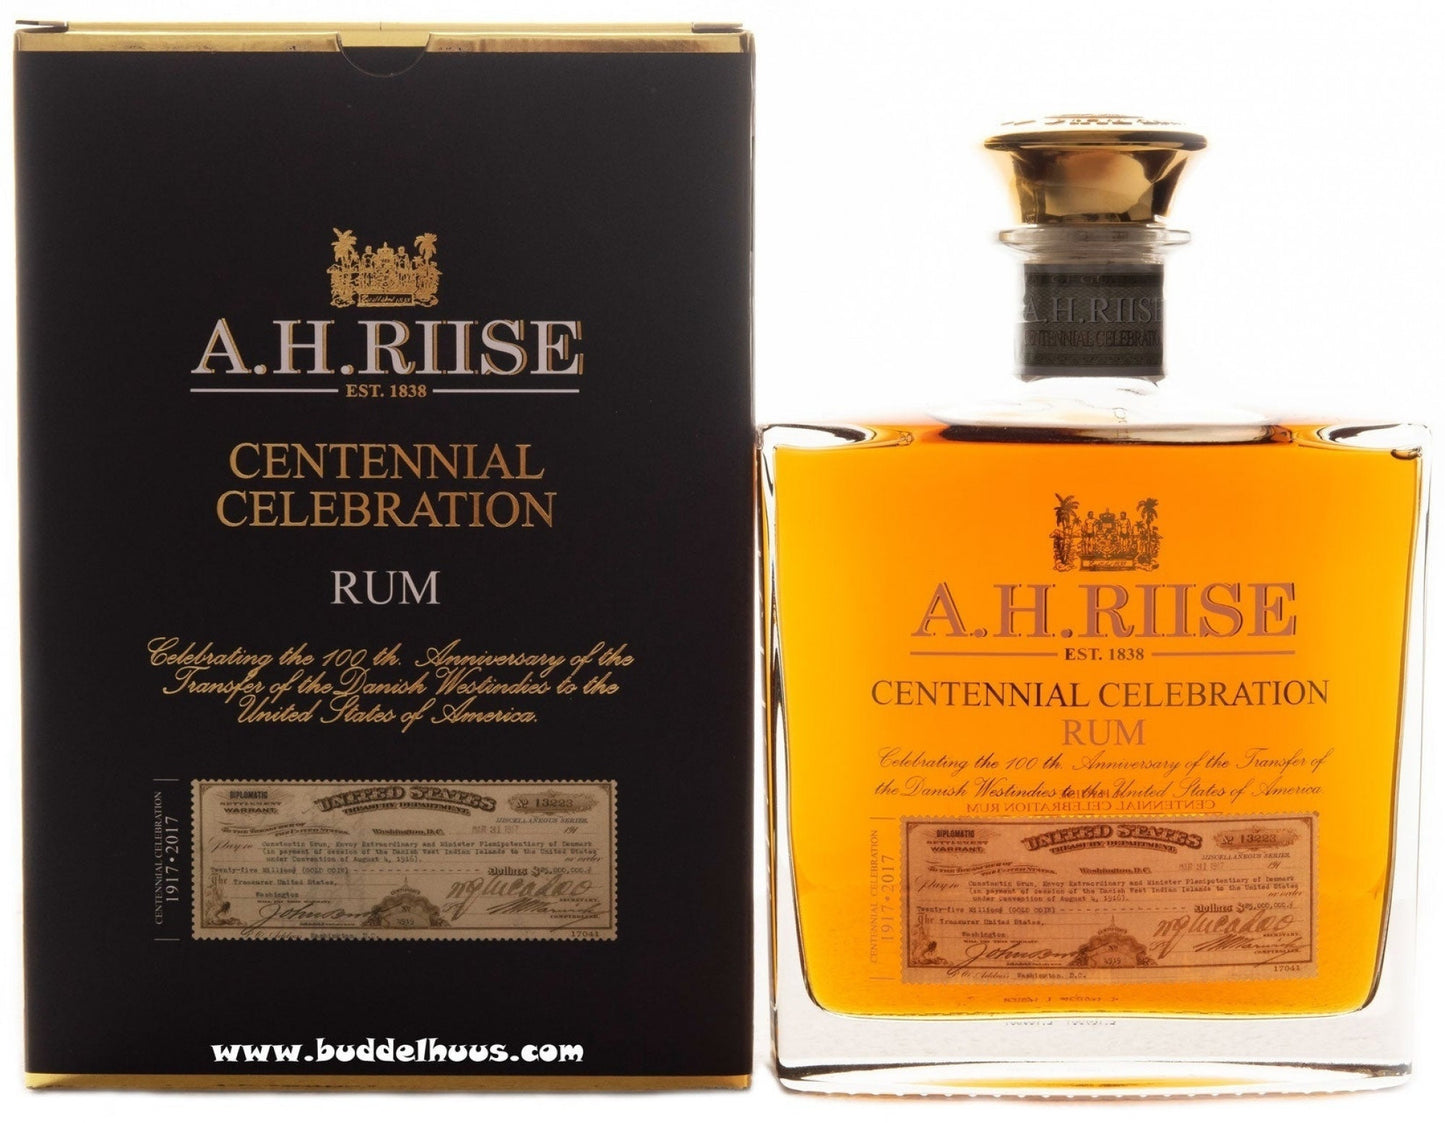 A.H. Riise Centennial Celebration